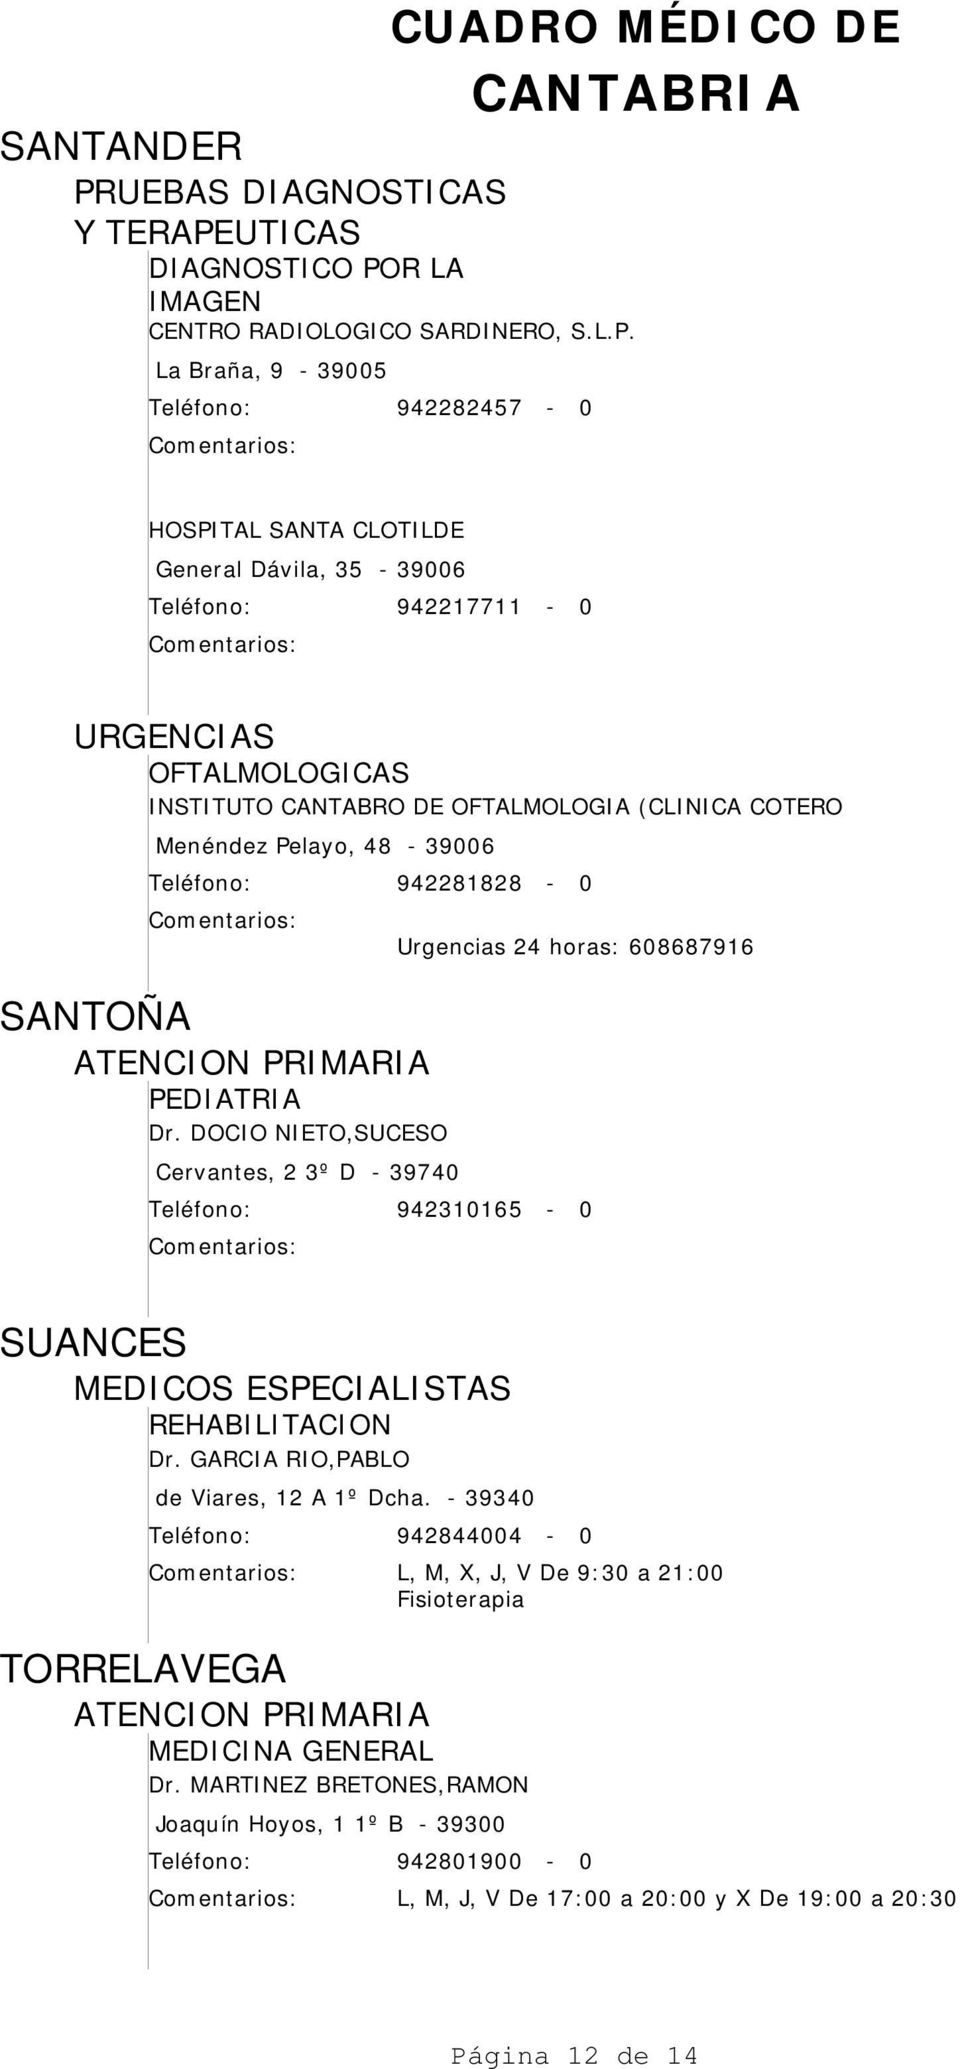 PEDIATRIA Dr. DOCIO NIETO,SUCESO Cervantes, 2 3º D - 39740 942310165-0 SUANCES REHABILITACION Dr. GARCIA RIO,PABLO de Viares, 12 A 1º Dcha.